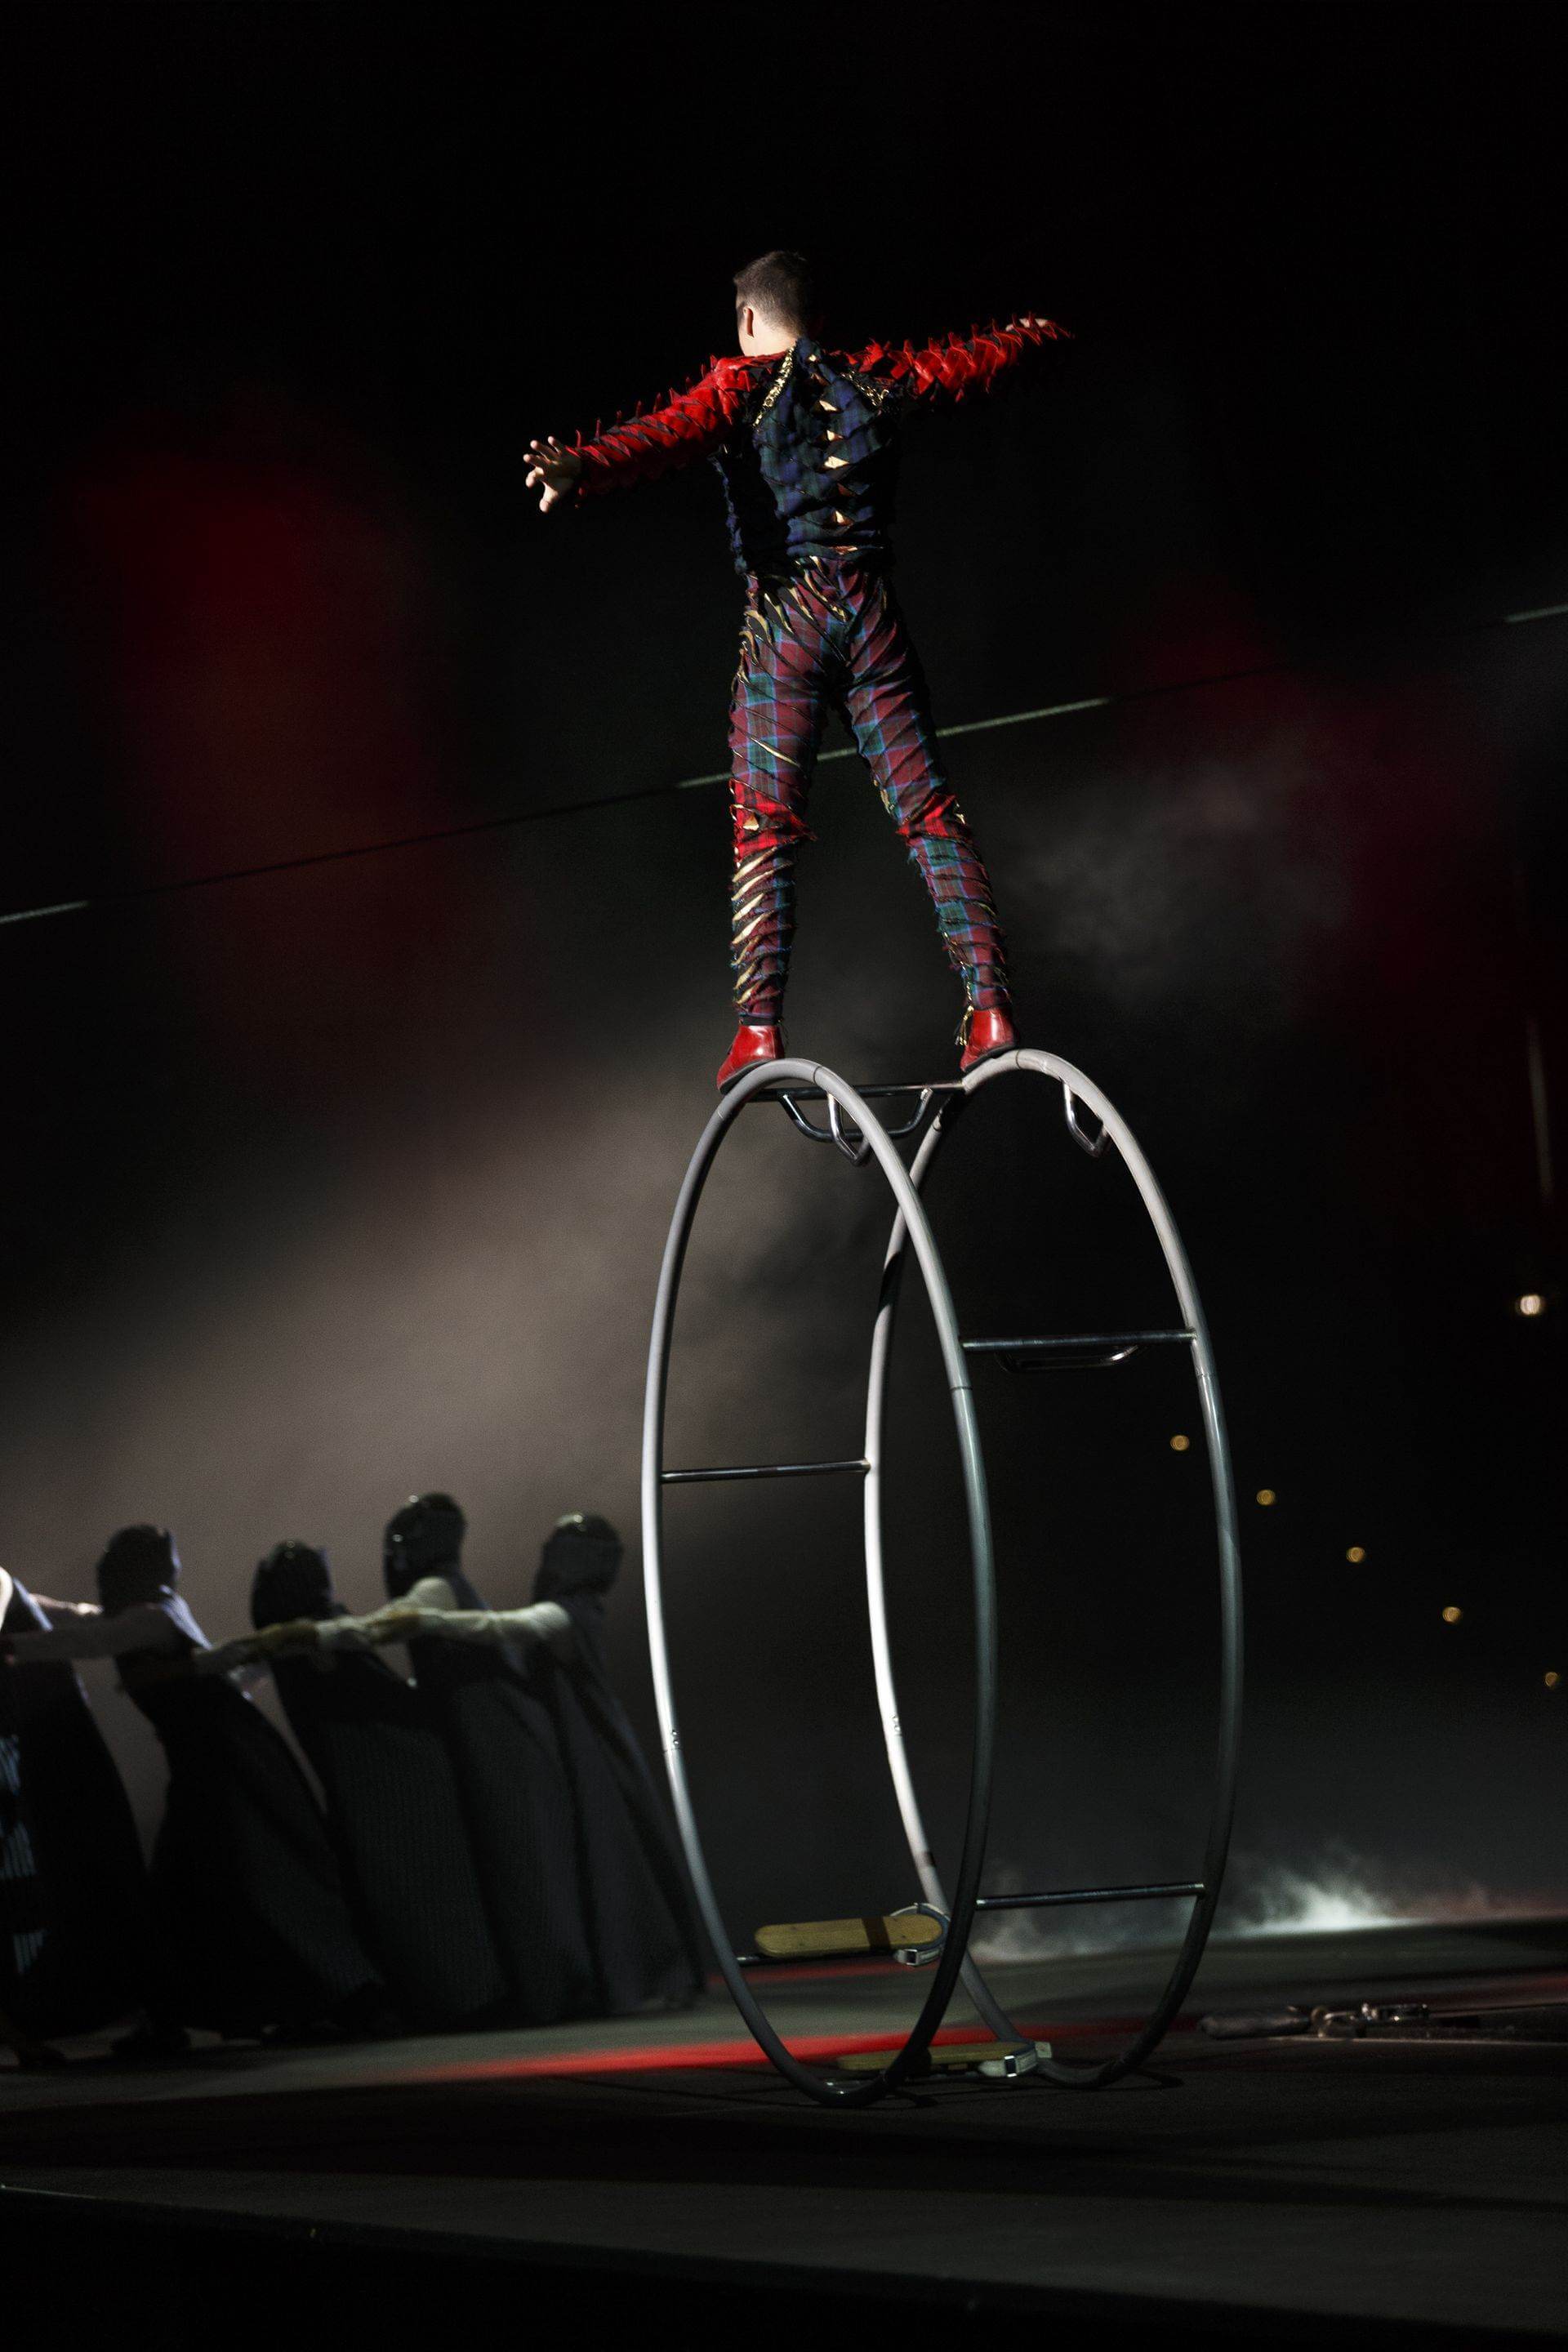 Scalada - Stelar by Cirque du Soleil 2017: Balancing act on a wheel